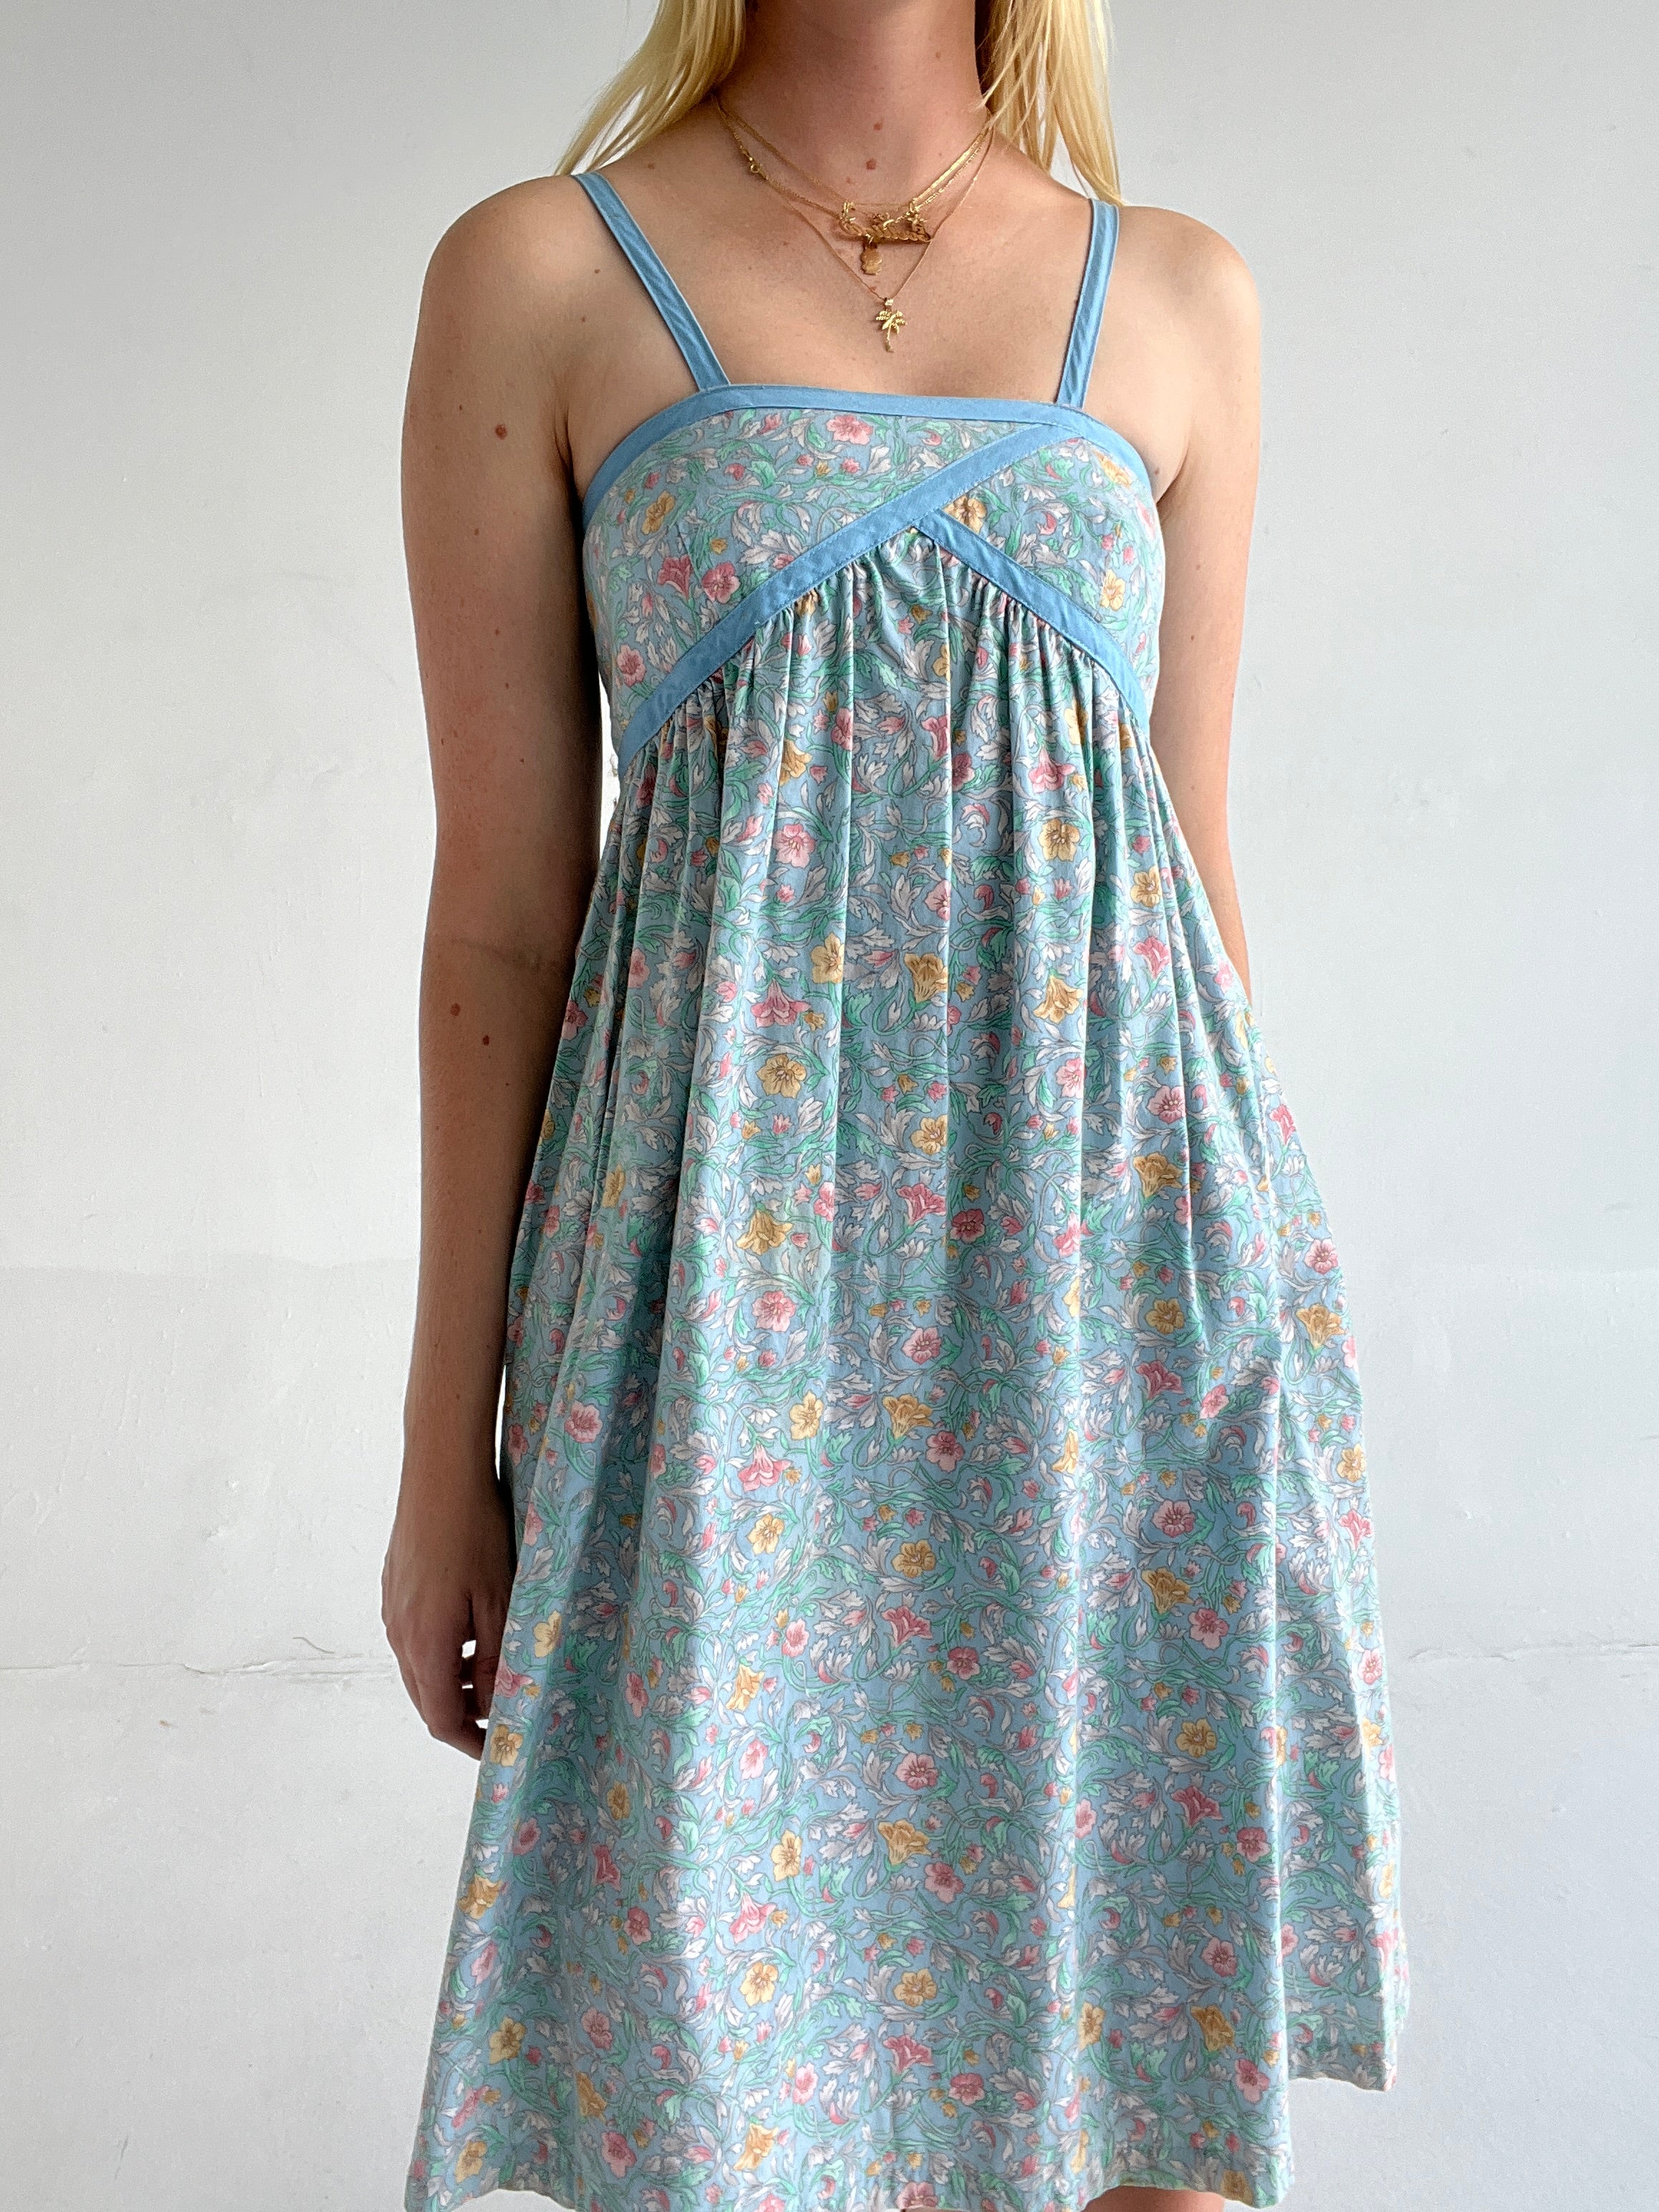 1950's Blue Cotton Floral Print Dress